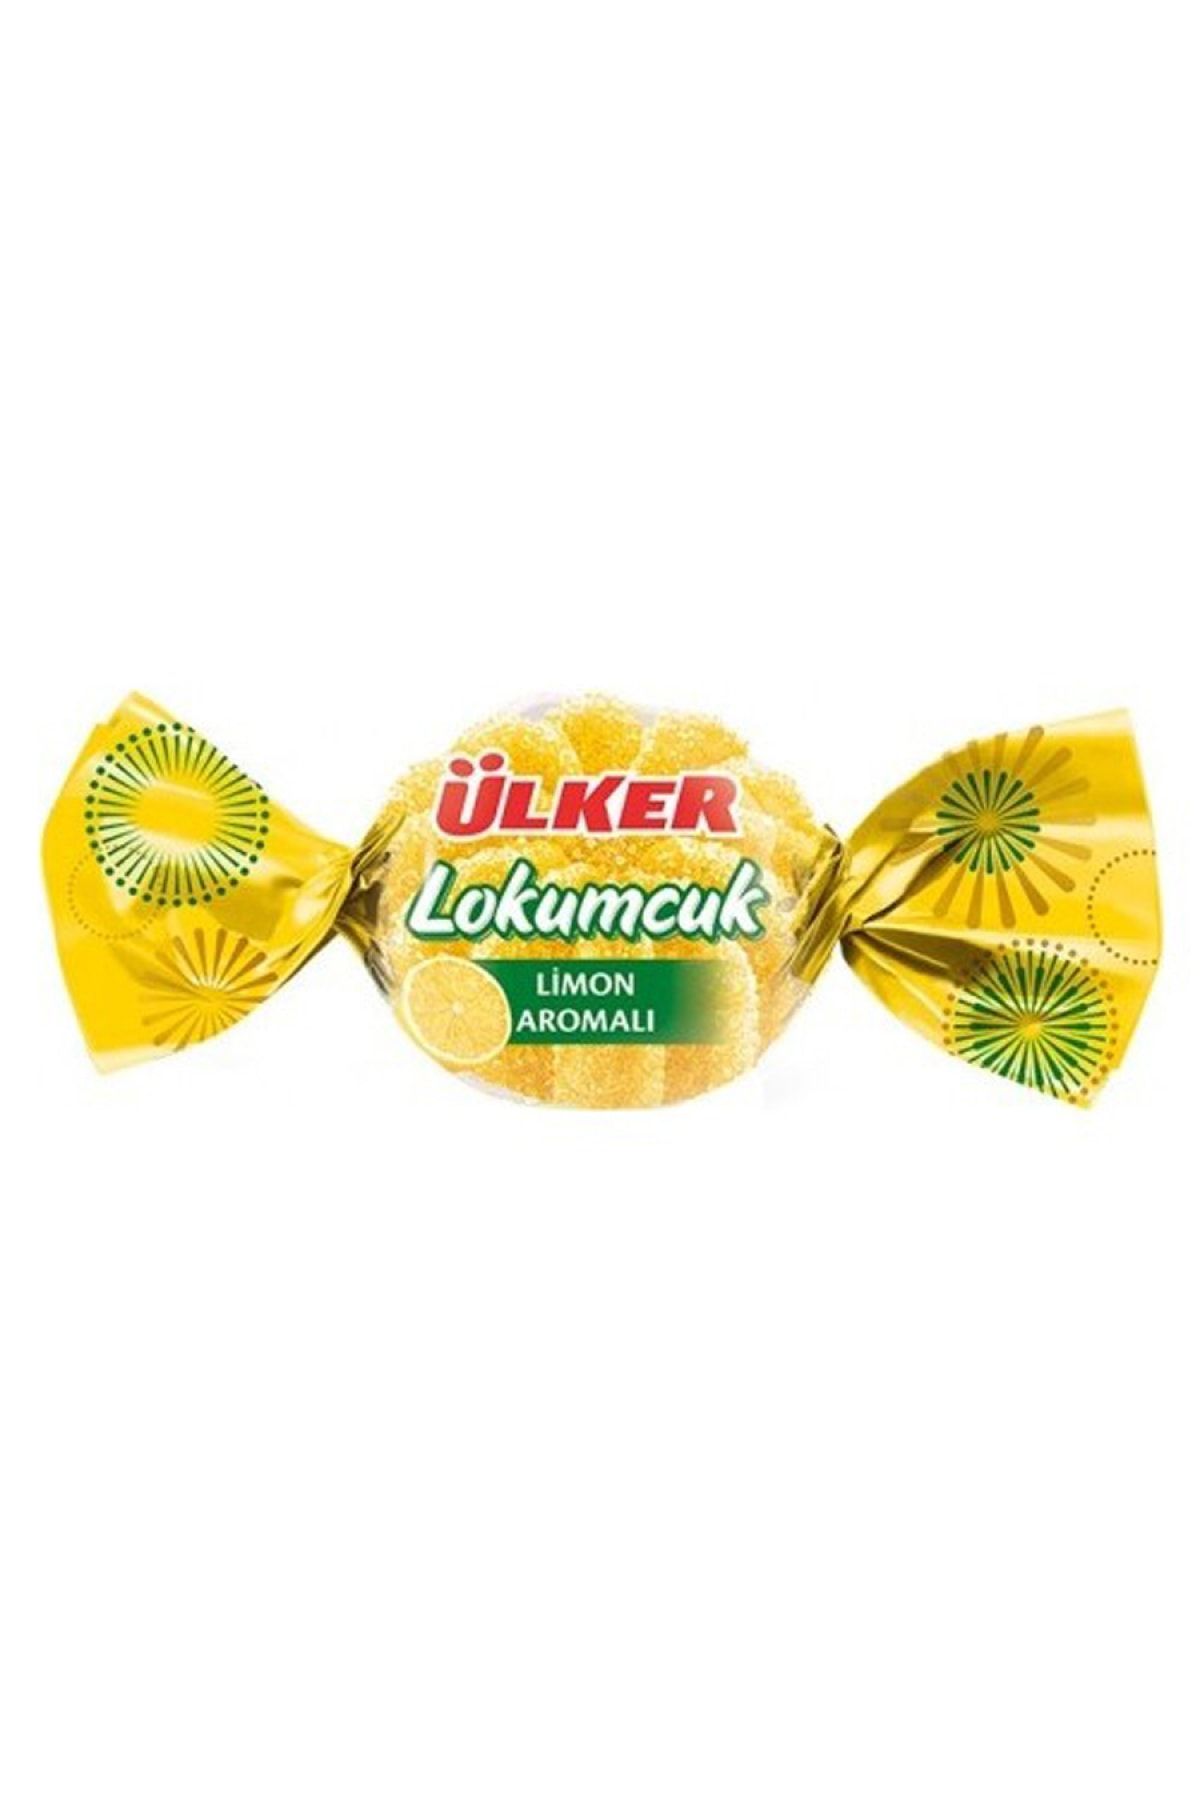 Ülker Lokumcuk Limon Aromalı Yumuşak Şekerleme 1000 Gr